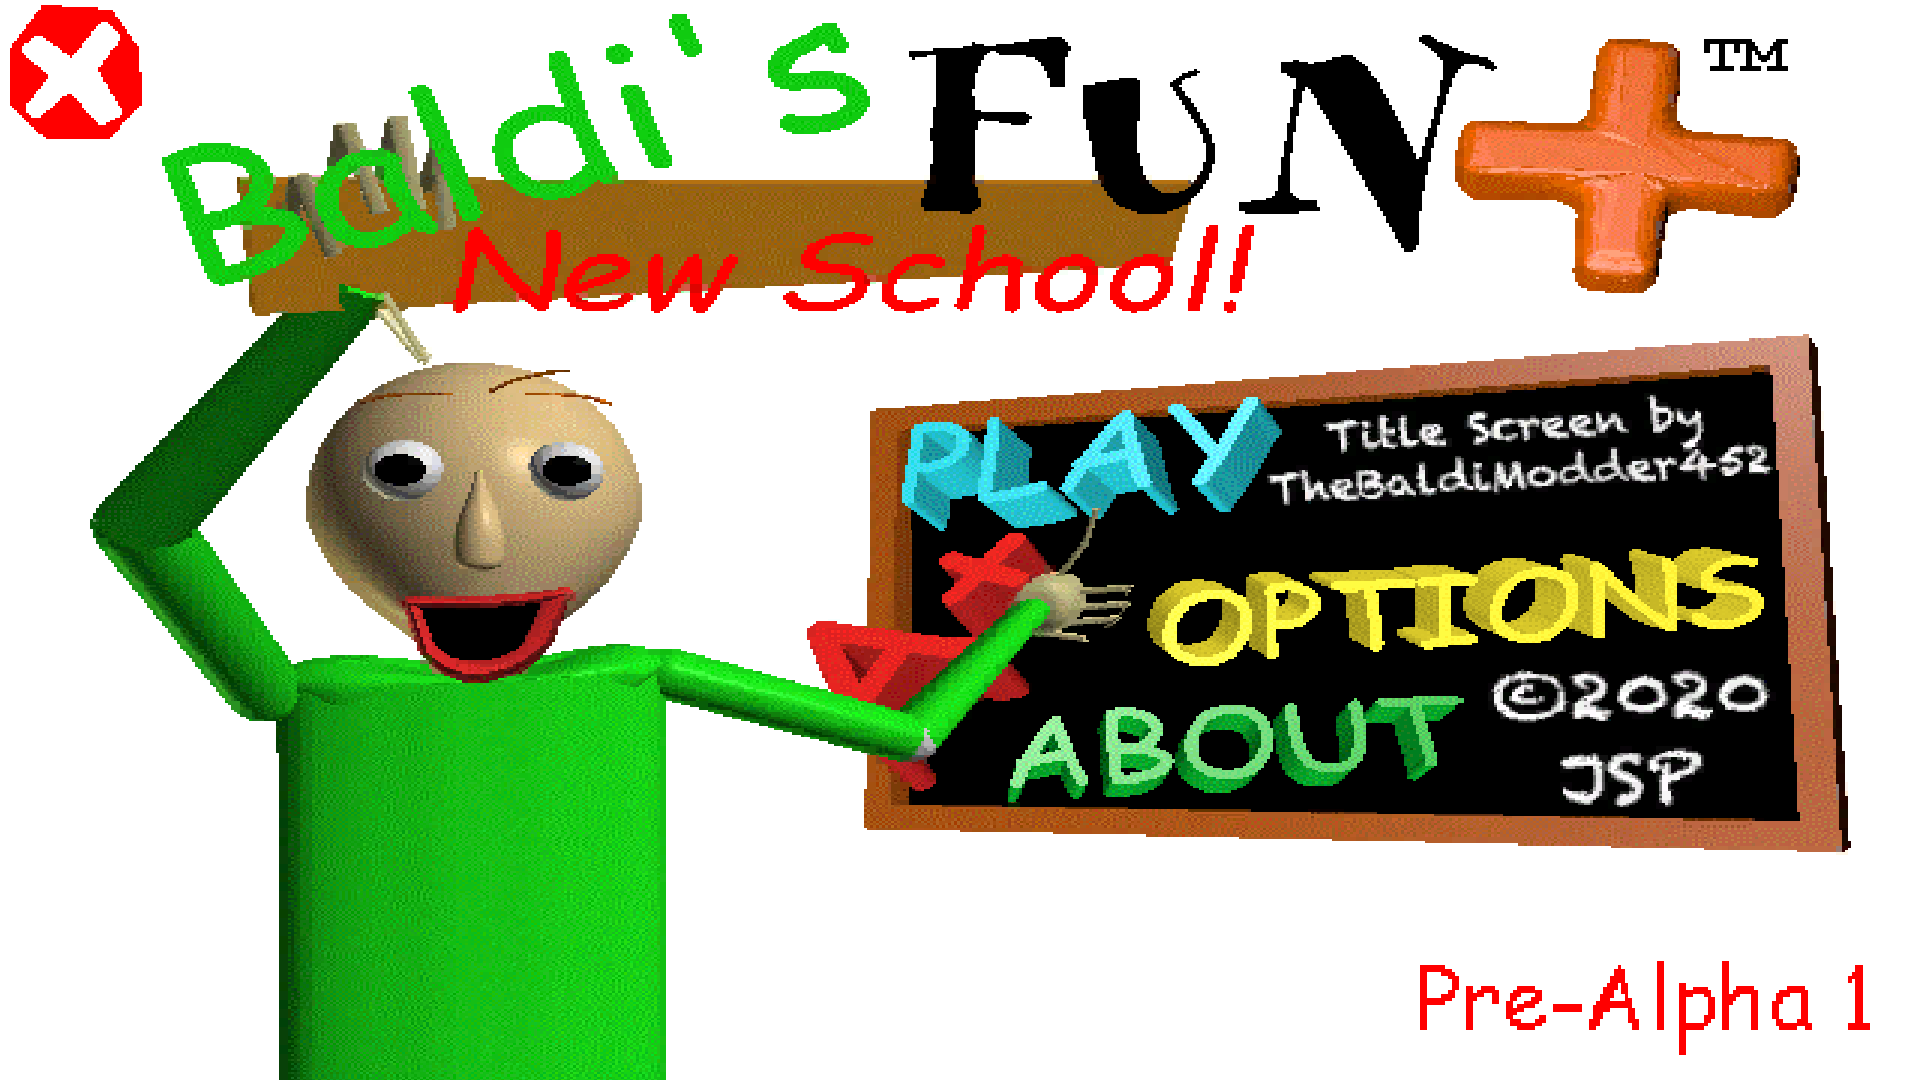 Baldi fun New School. Baldi fun New School Remastered 1.4. Baldi Basics Plus School. Baldi's fun New School Remastered 1.4.3.1. Baldi new school plus